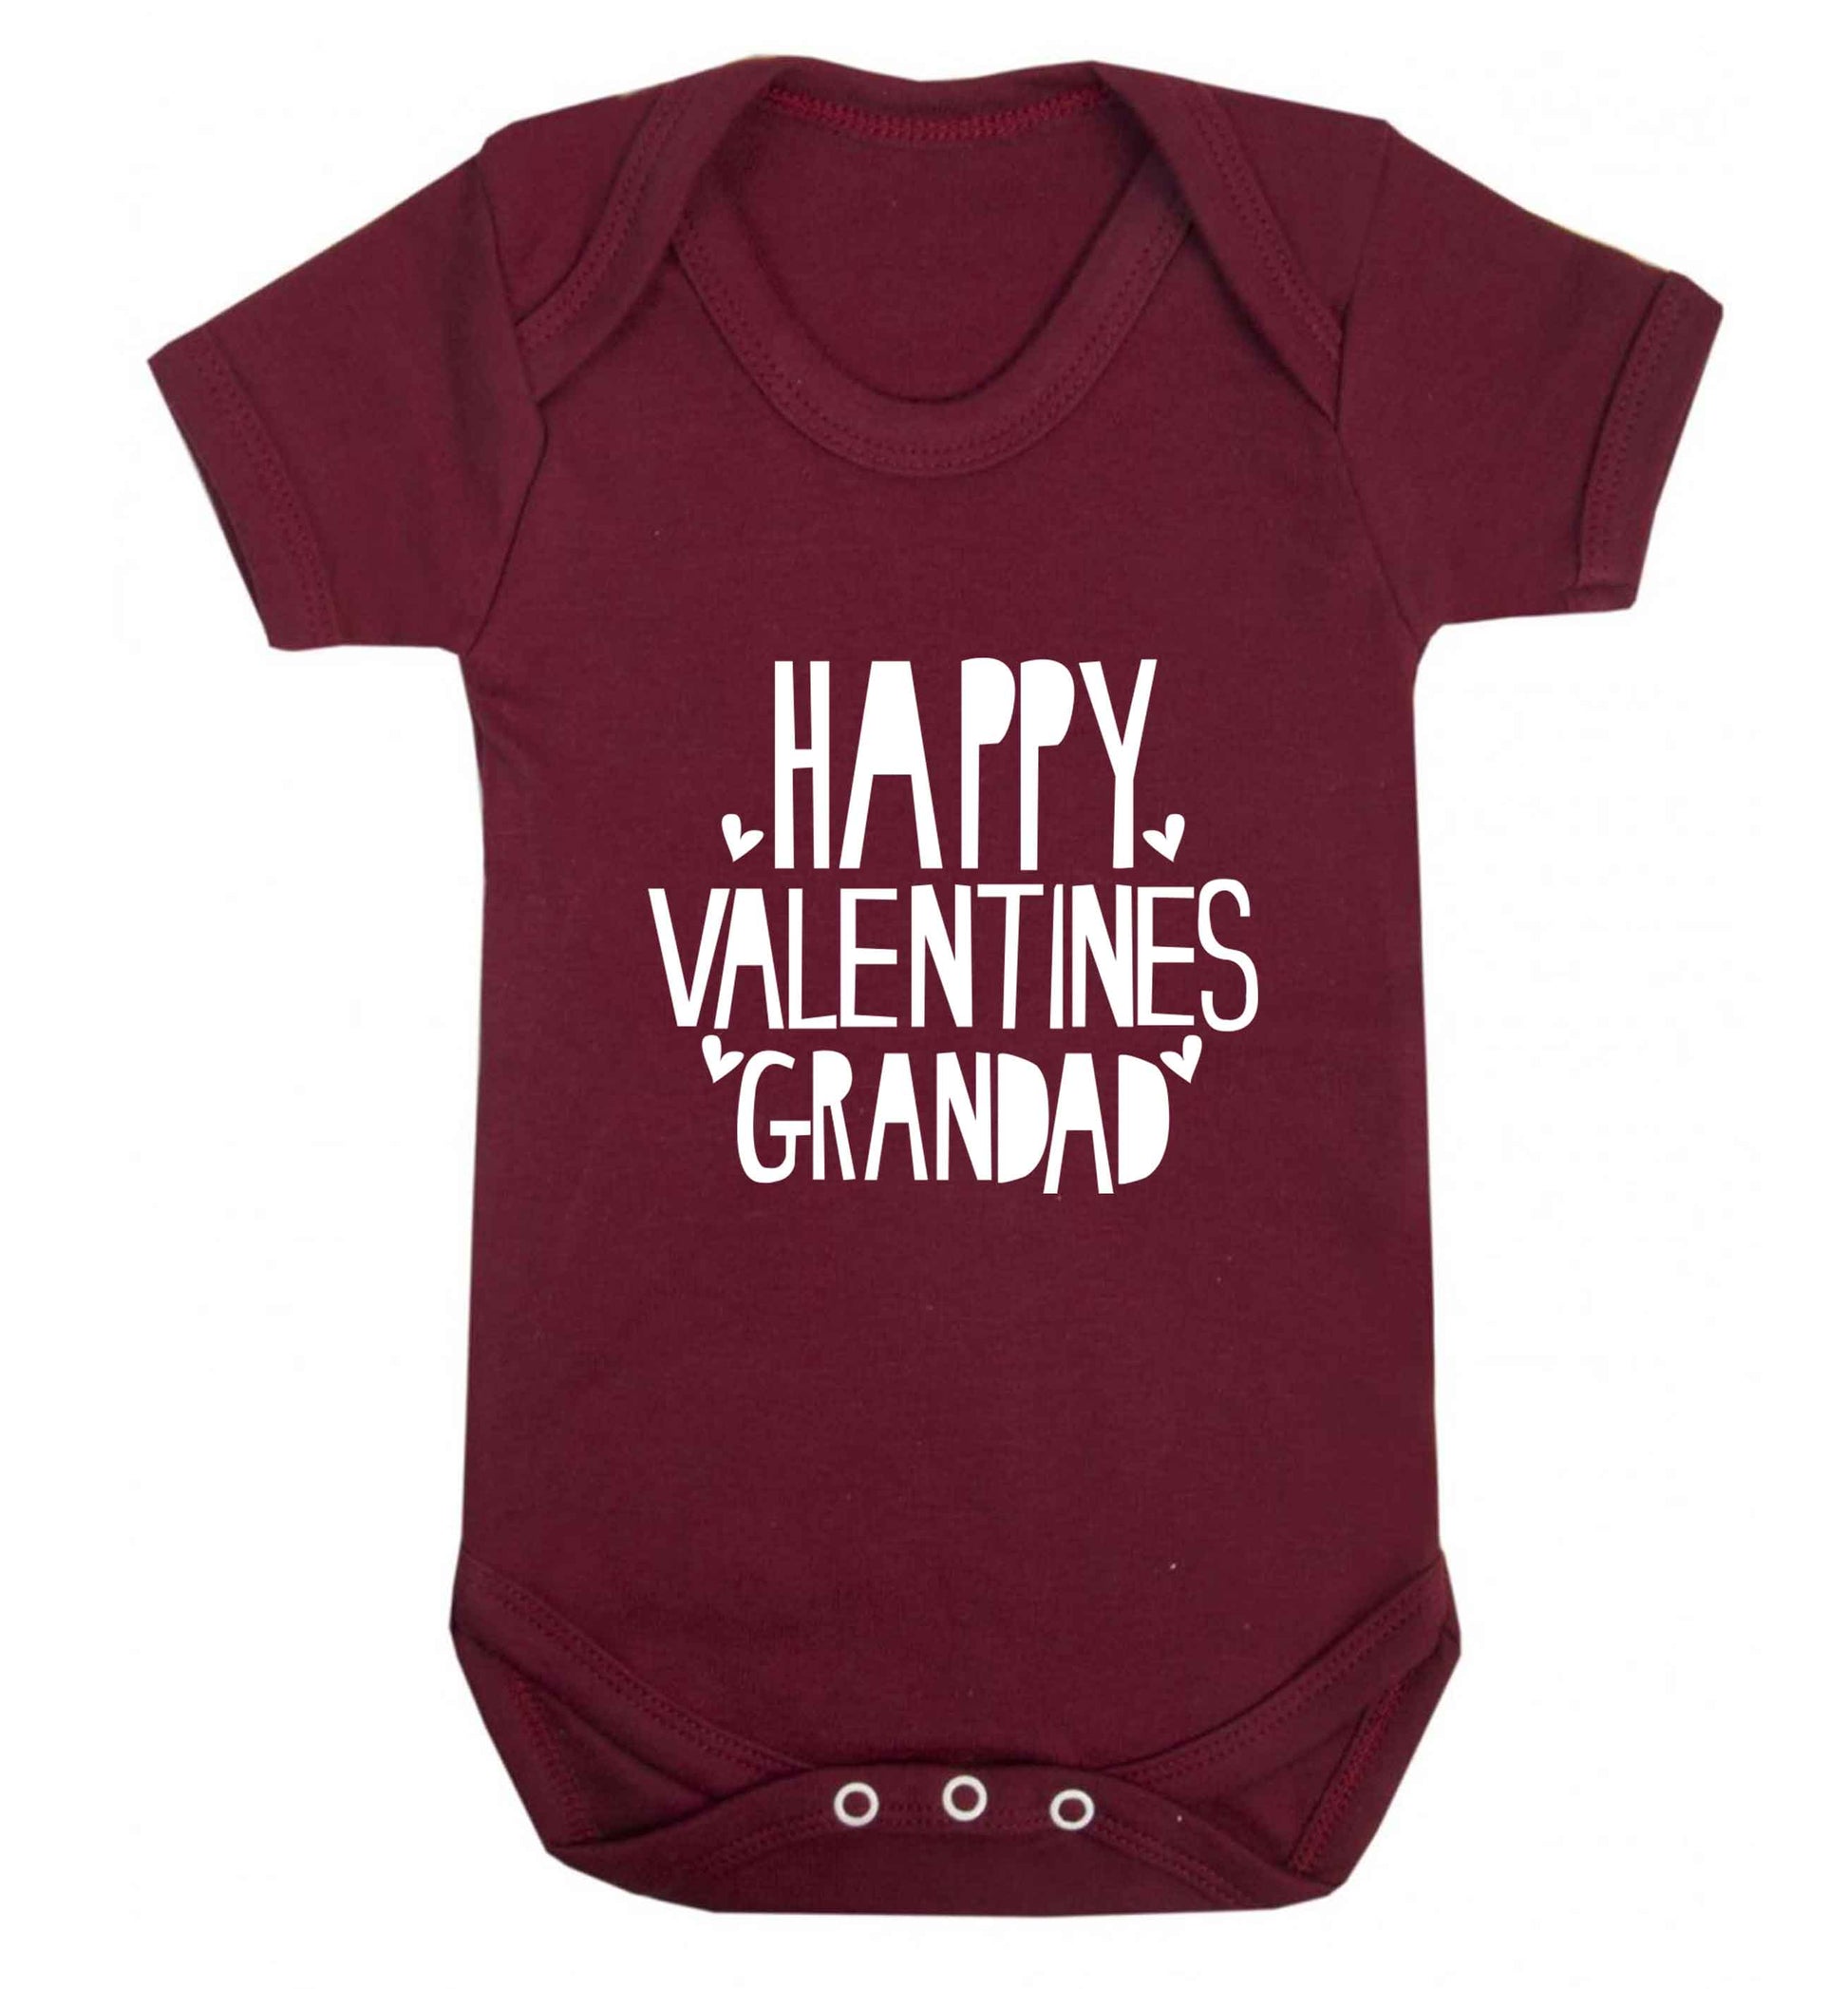 Happy valentines grandad baby vest maroon 18-24 months